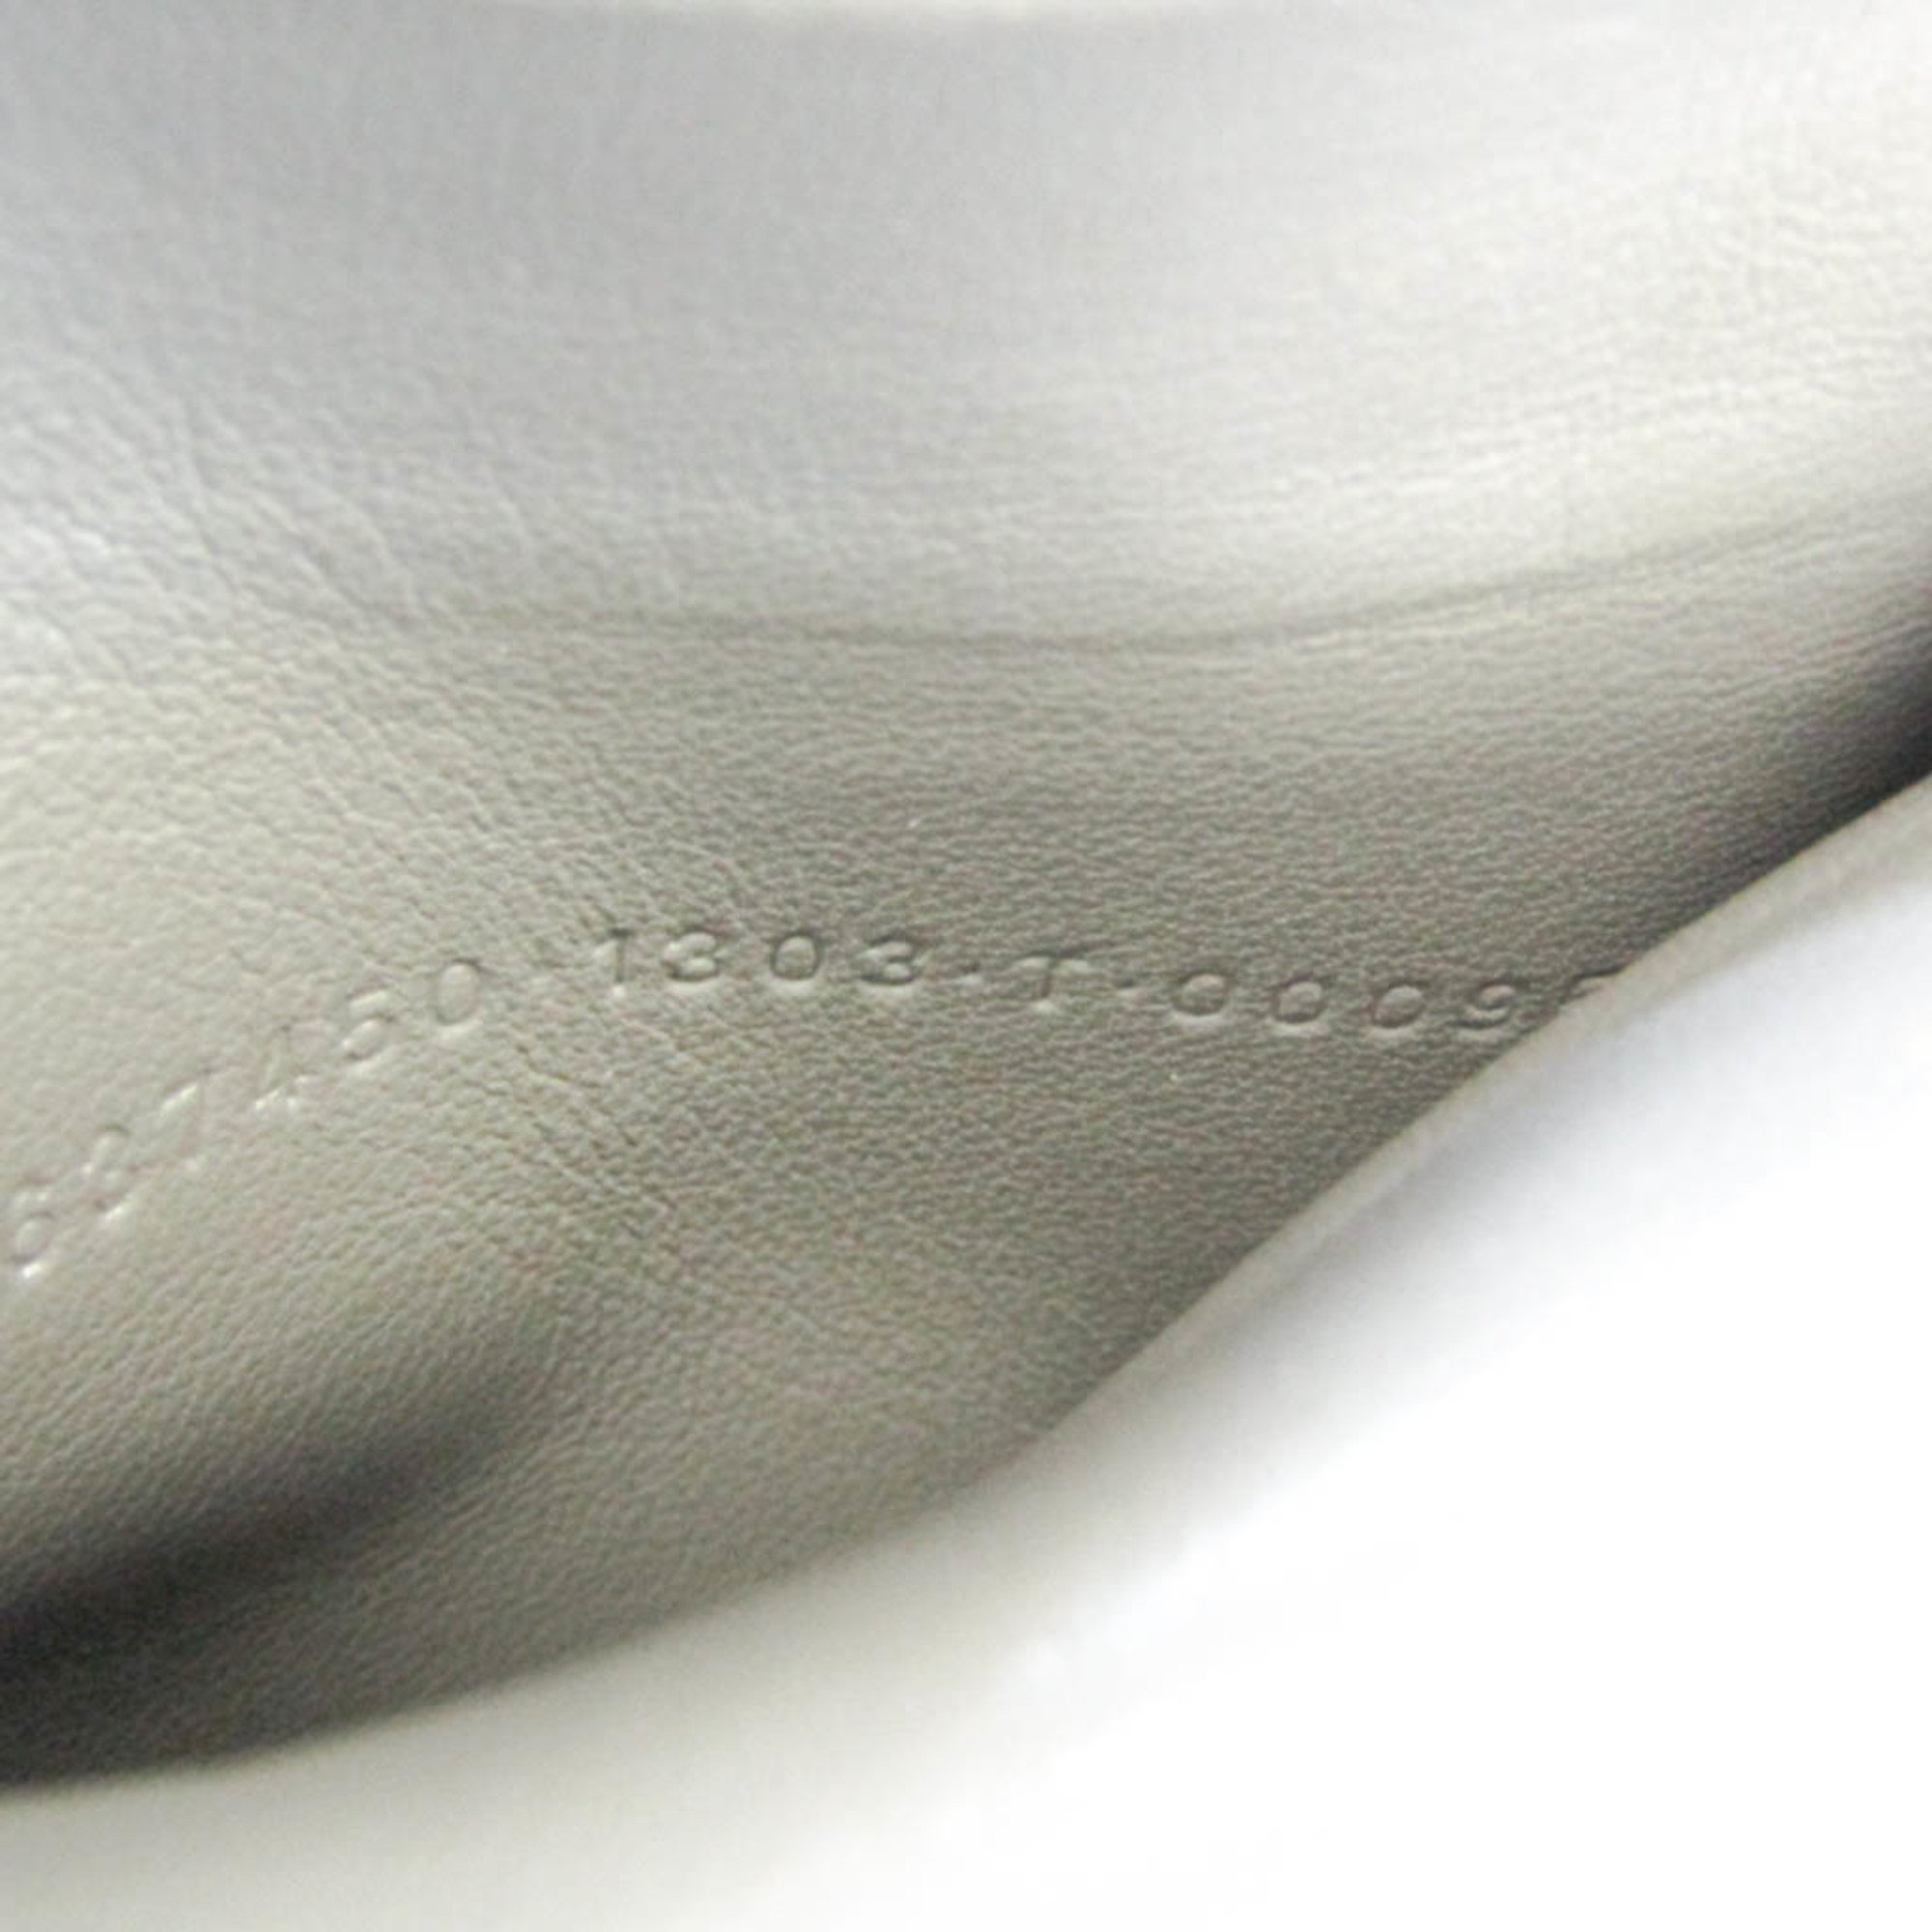 バレンシアガ(Balenciaga) ペーパー 637450 レディース,メンズ  型押しレザー 財布（三つ折り） グレー